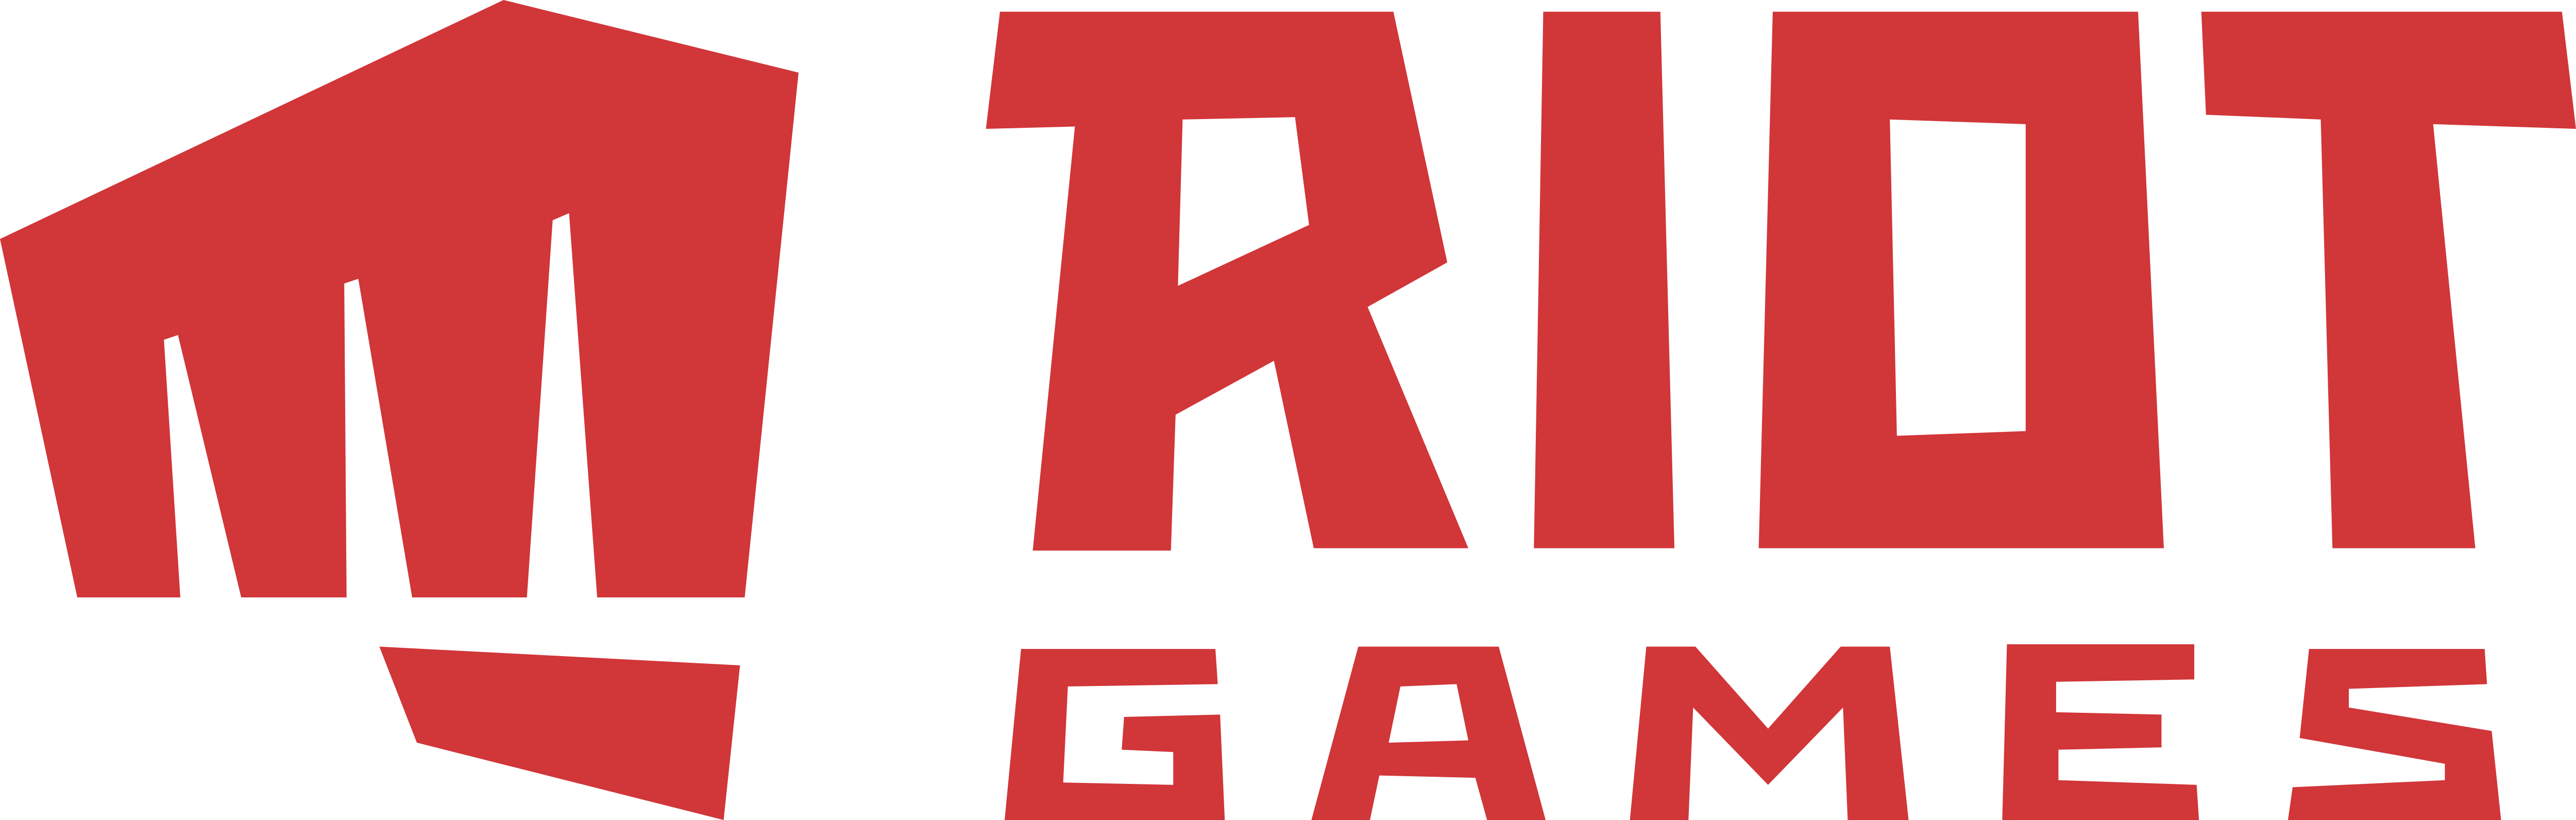 Riot Games – Logos Download